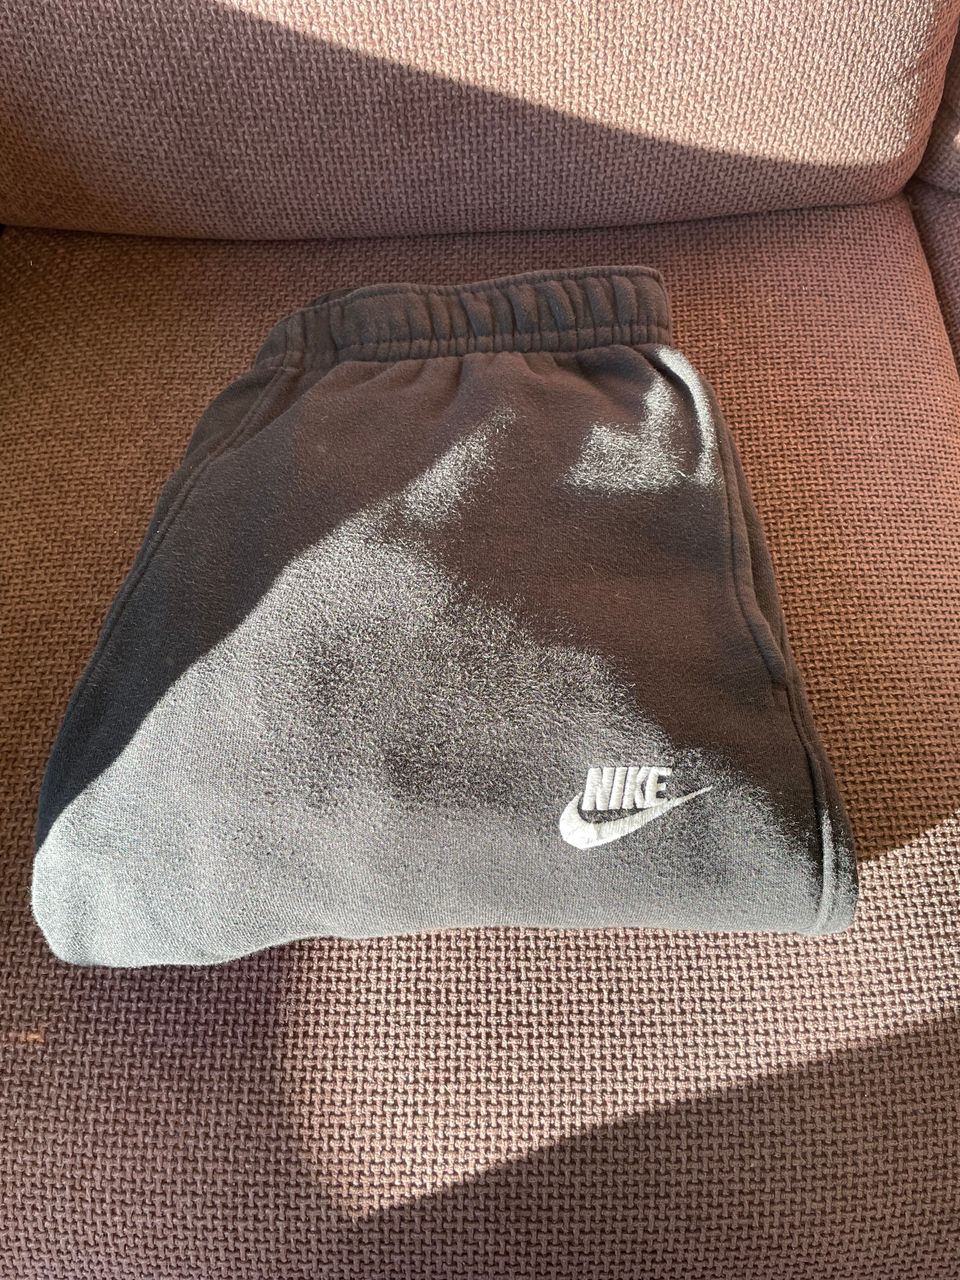 Nike housut